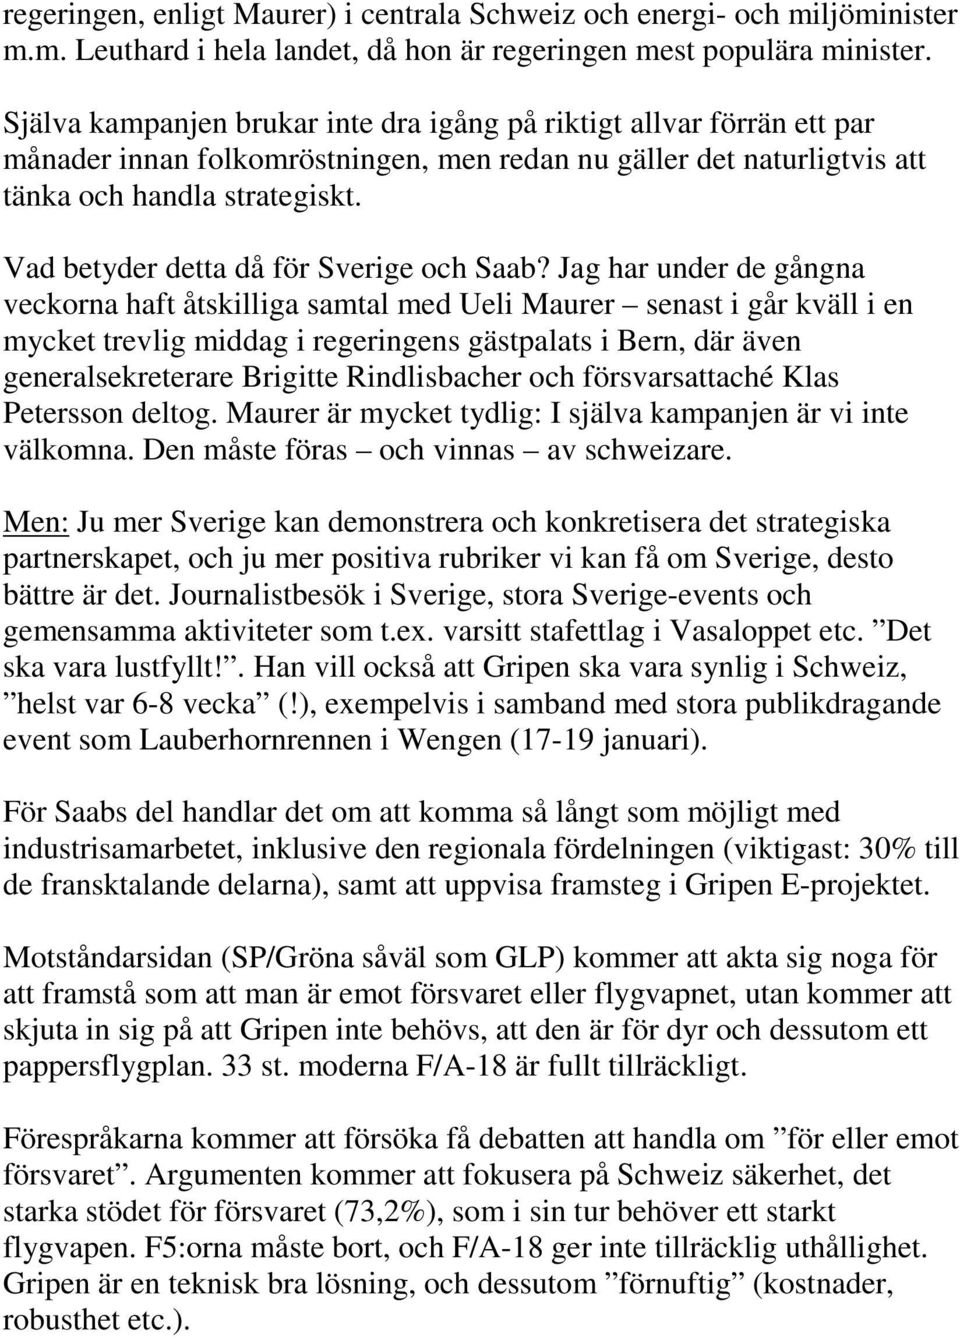 Vad betyder detta då för Sverige och Saab?